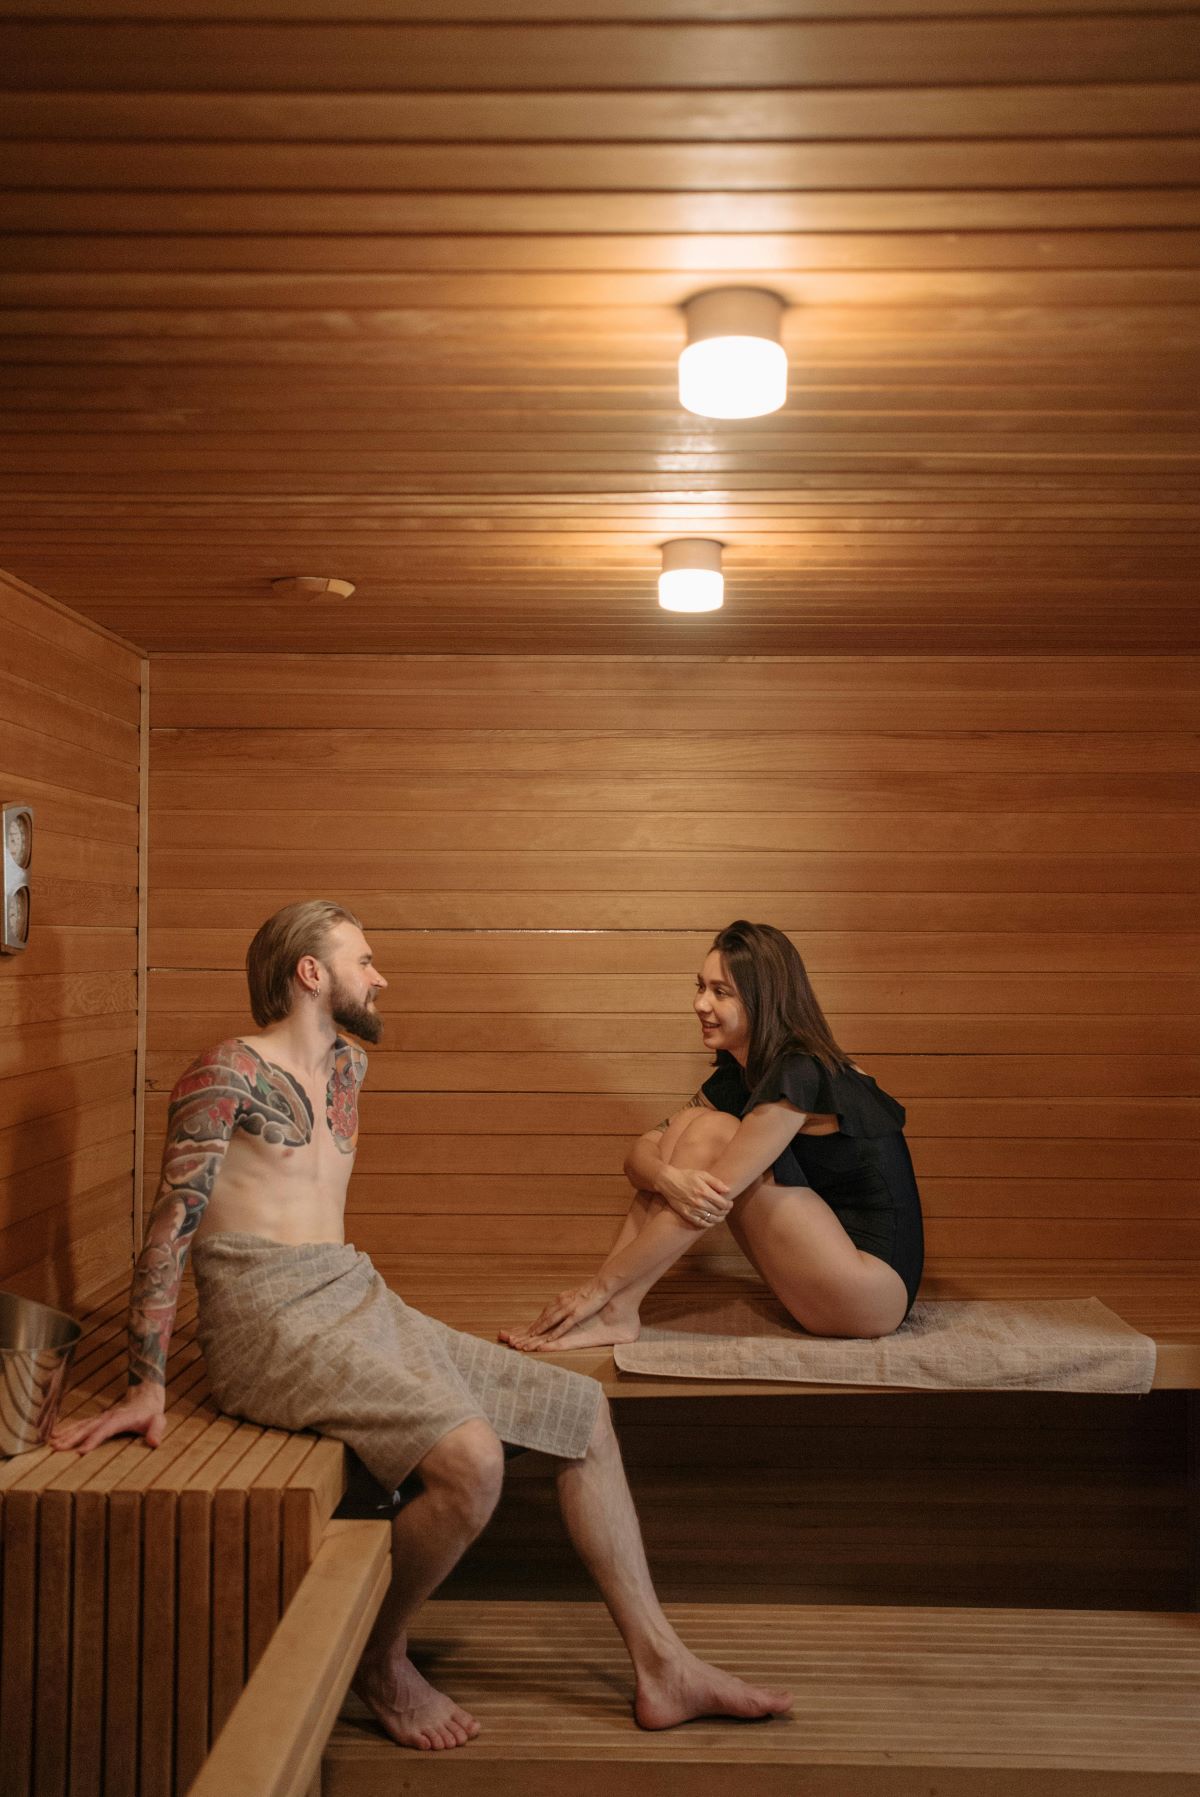 2 people in a sauna